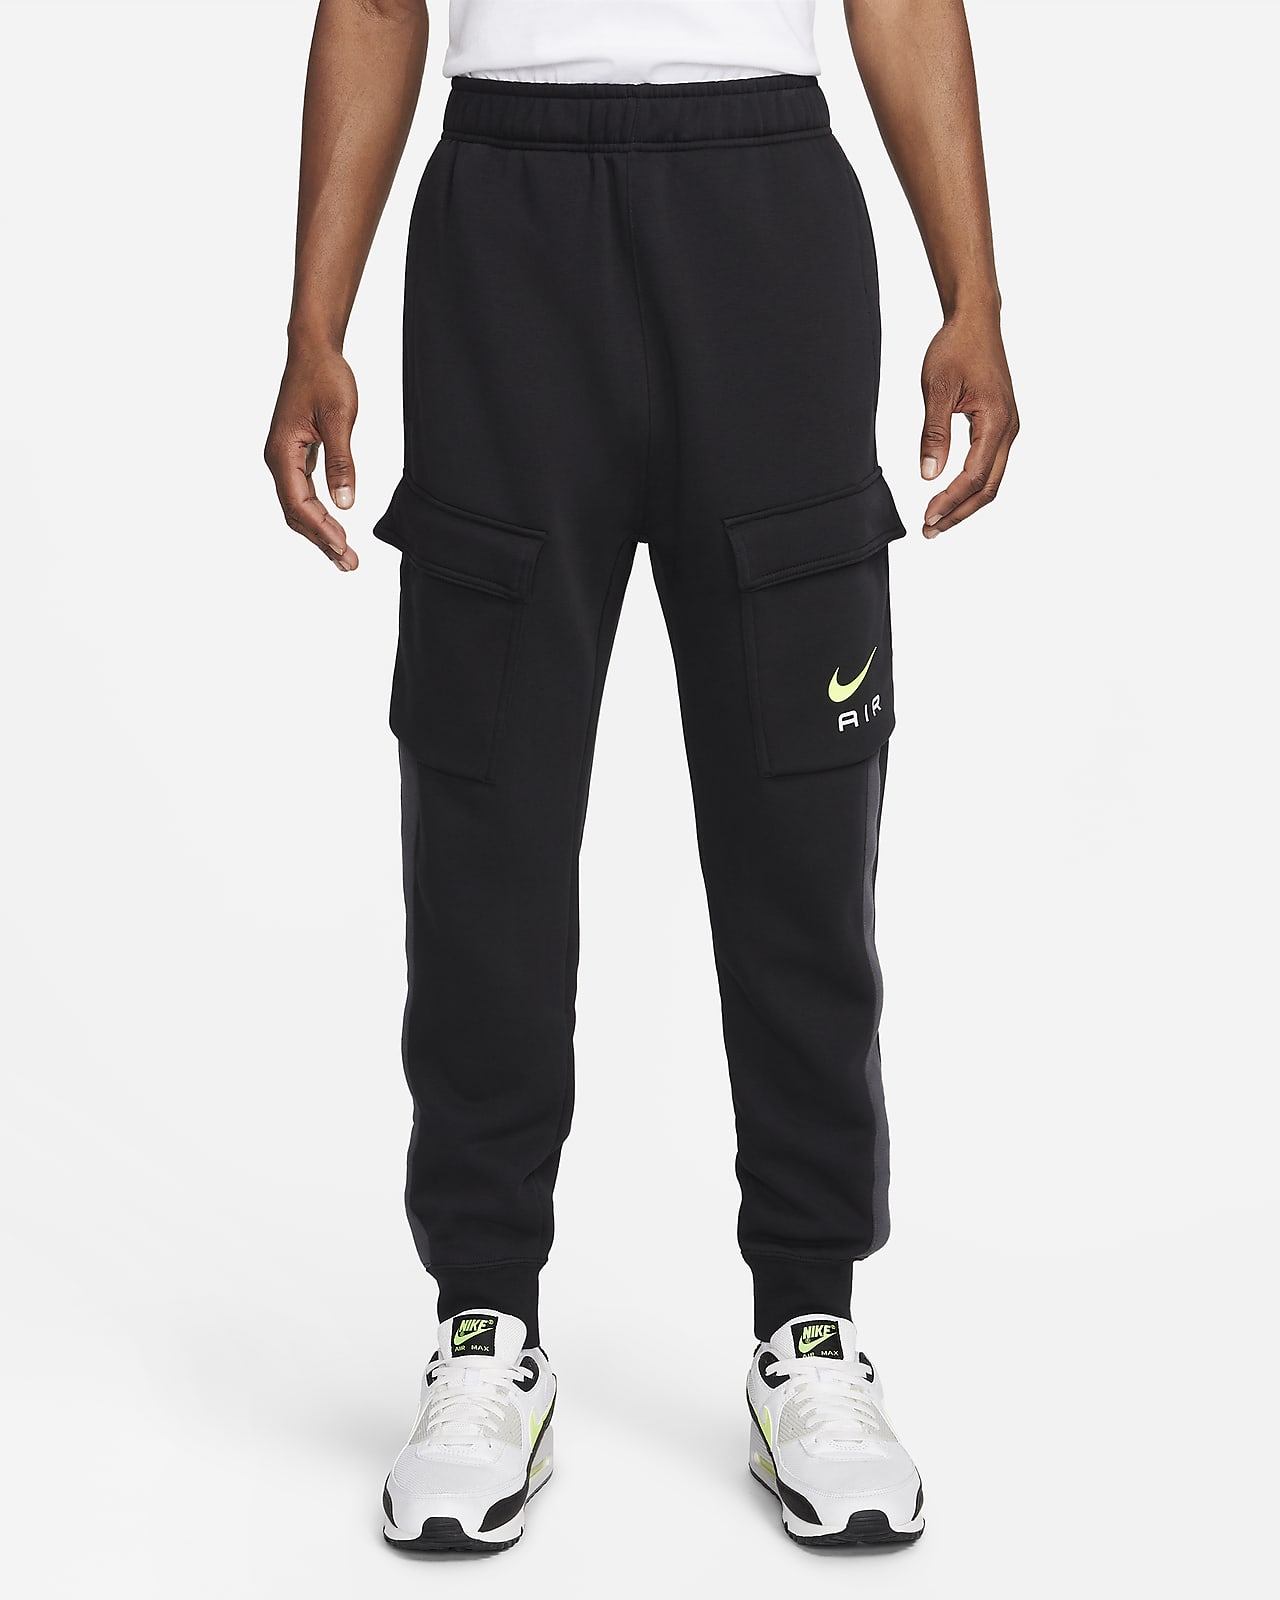 Pantalon cargo en tissu Fleece Nike Air pour homme